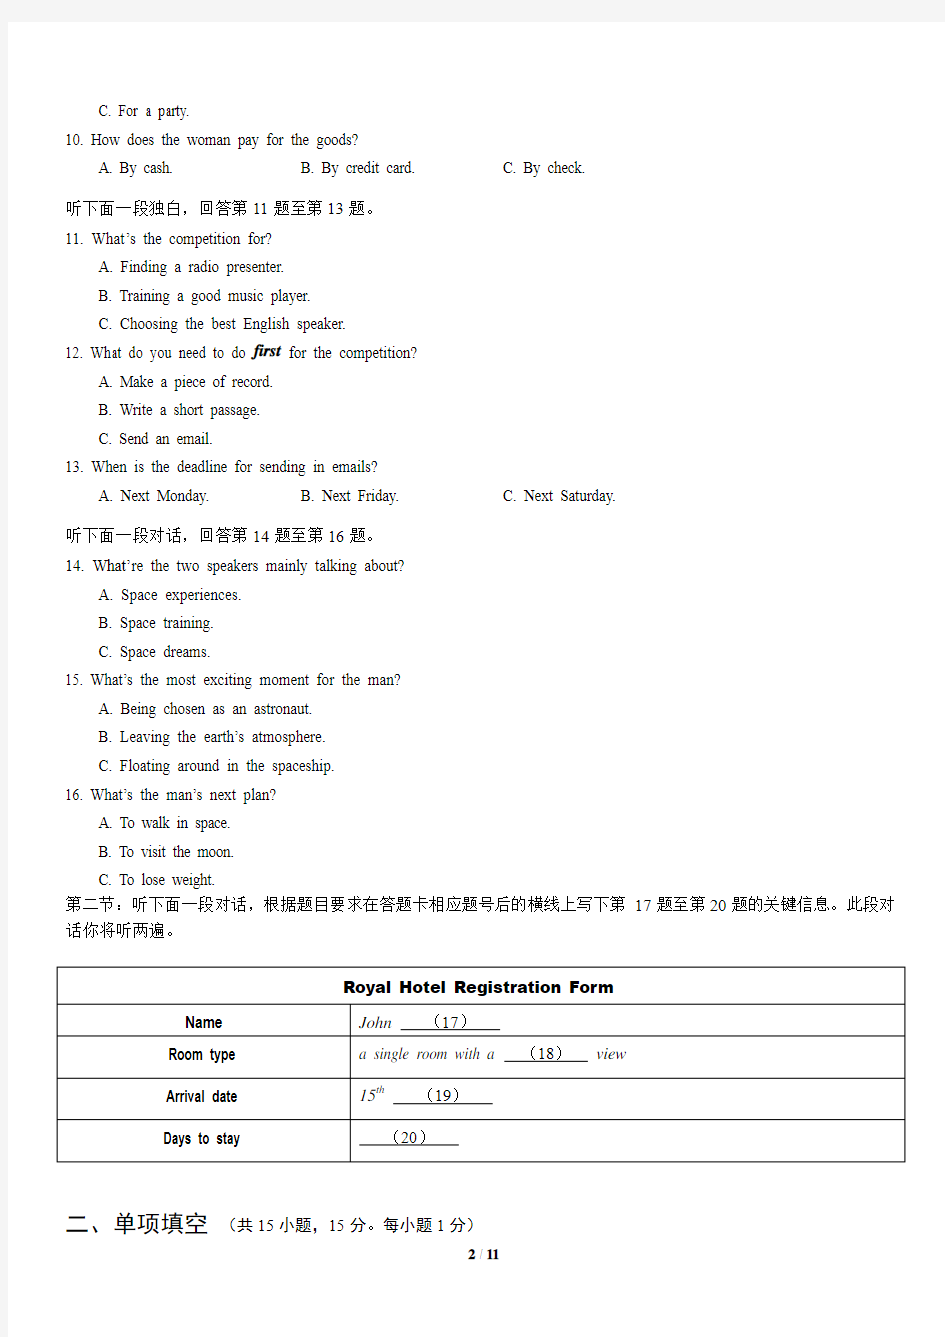 2014年北京市夏季高中会考英语试卷(包含答案解析)